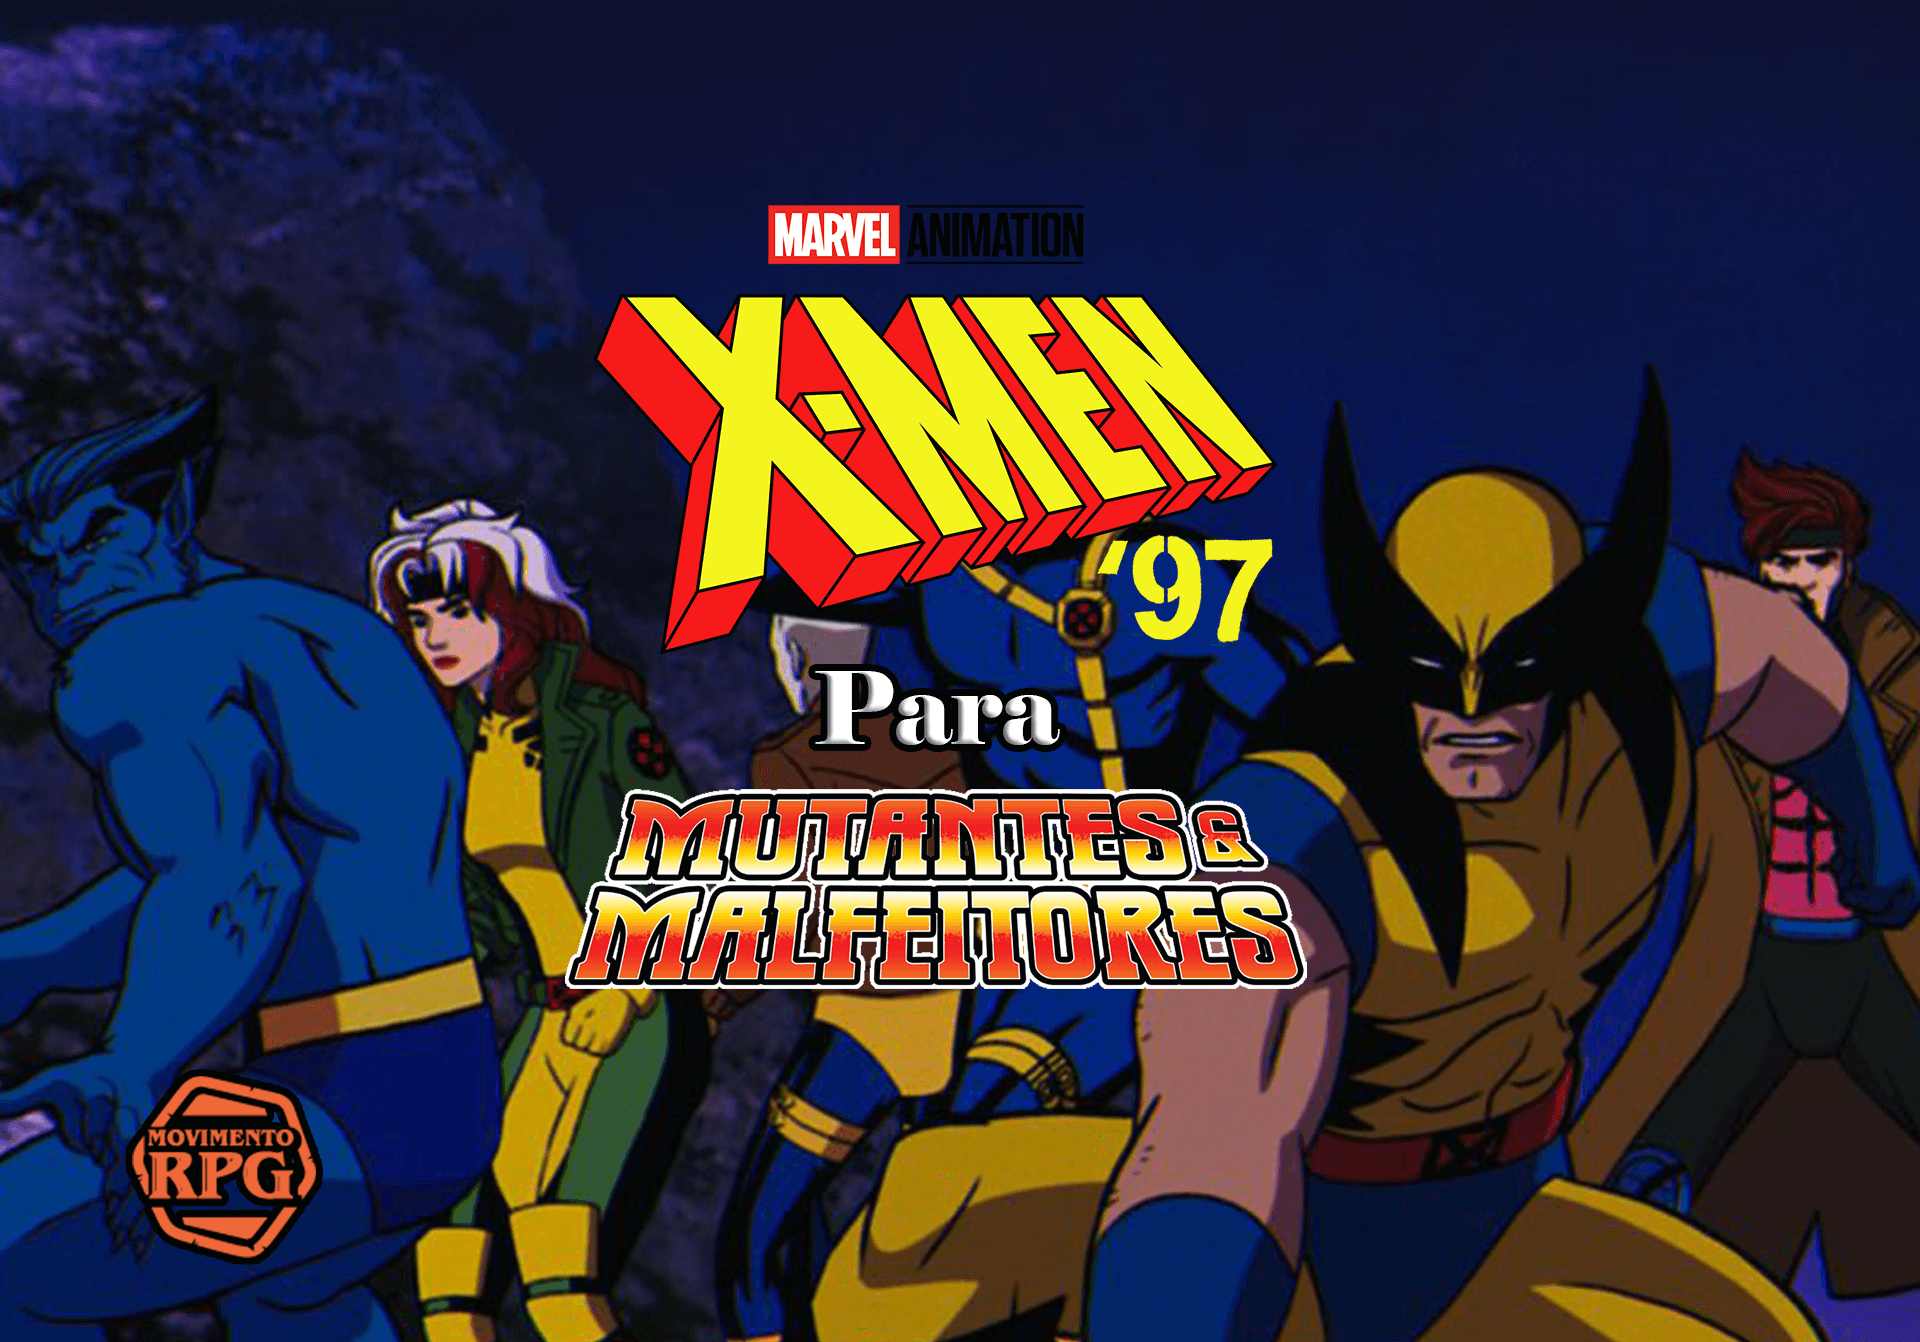 A Mim, meus X-Men! – X-Men ’97 para Mutantes & Malfeitores